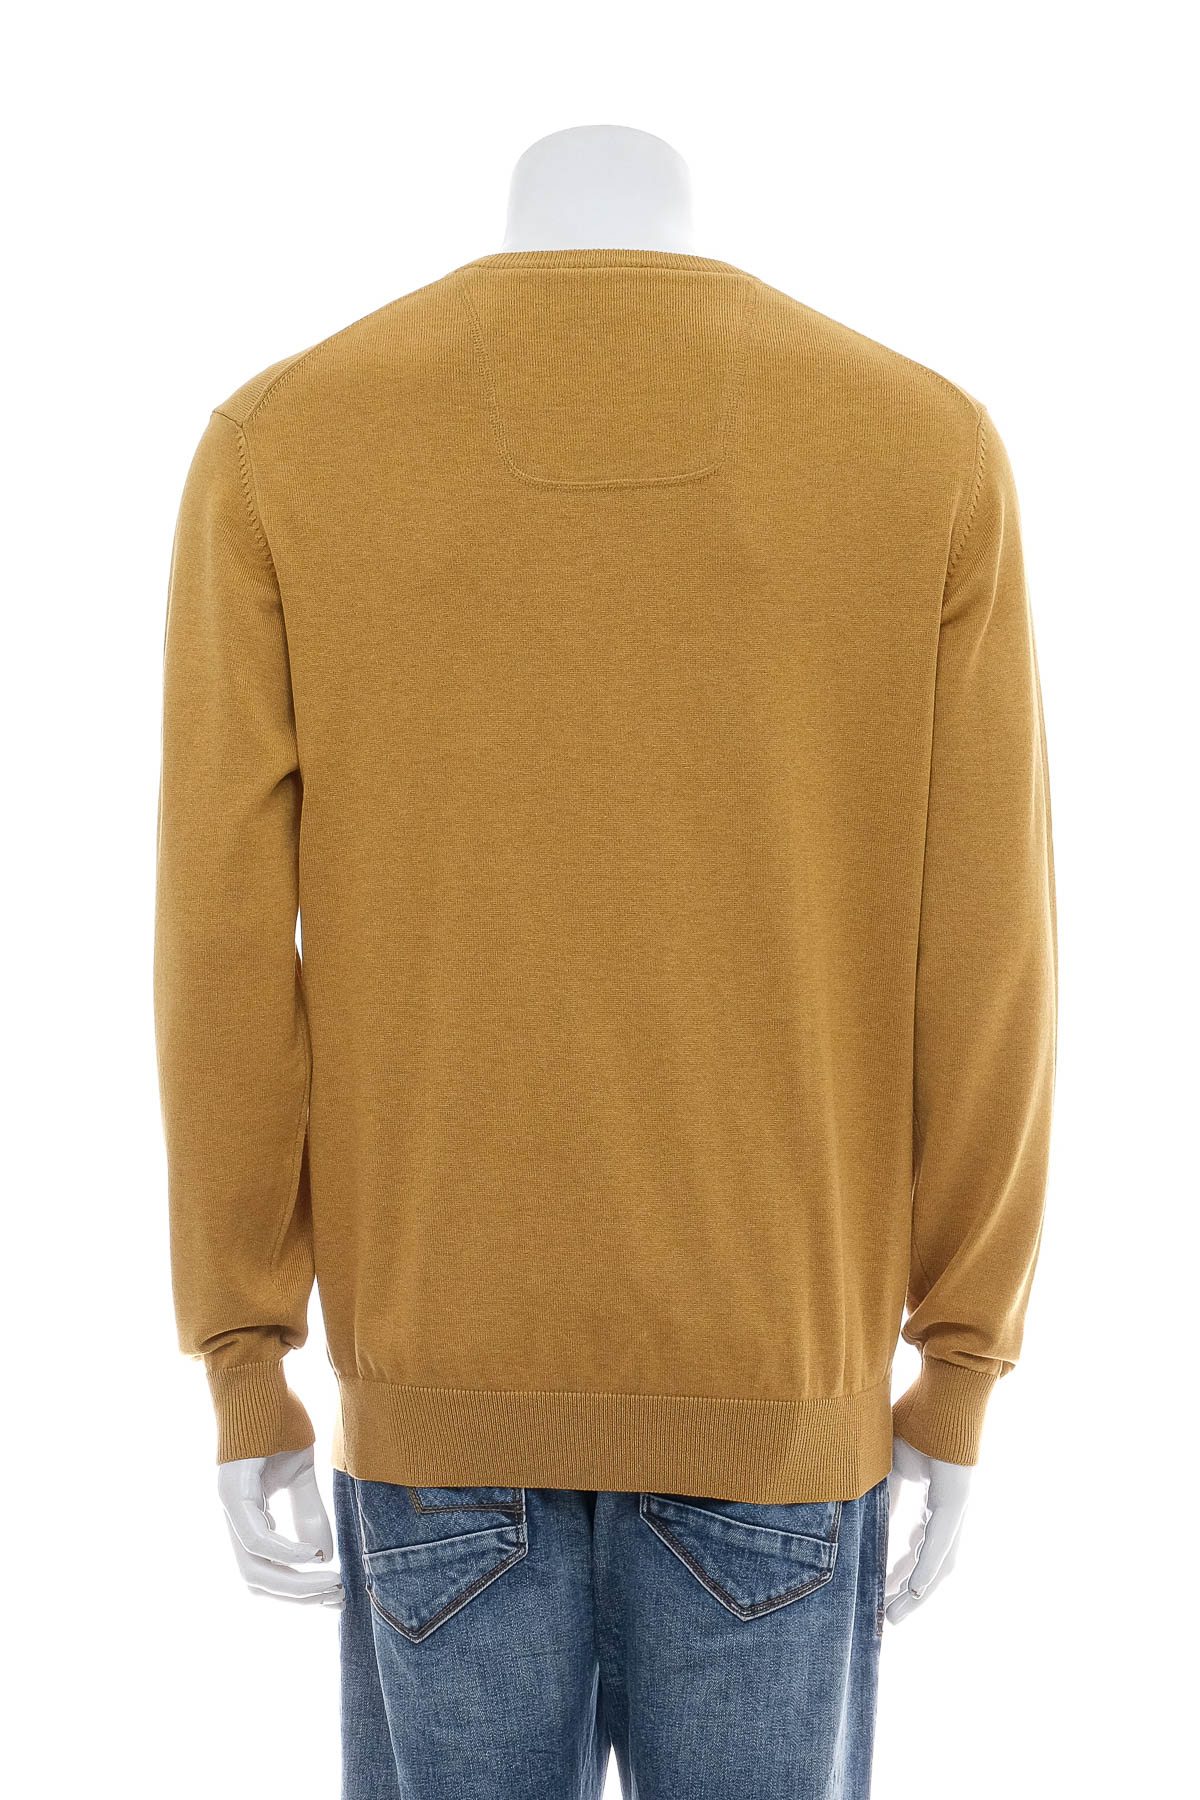 Men's sweater - Casa Moda - 1